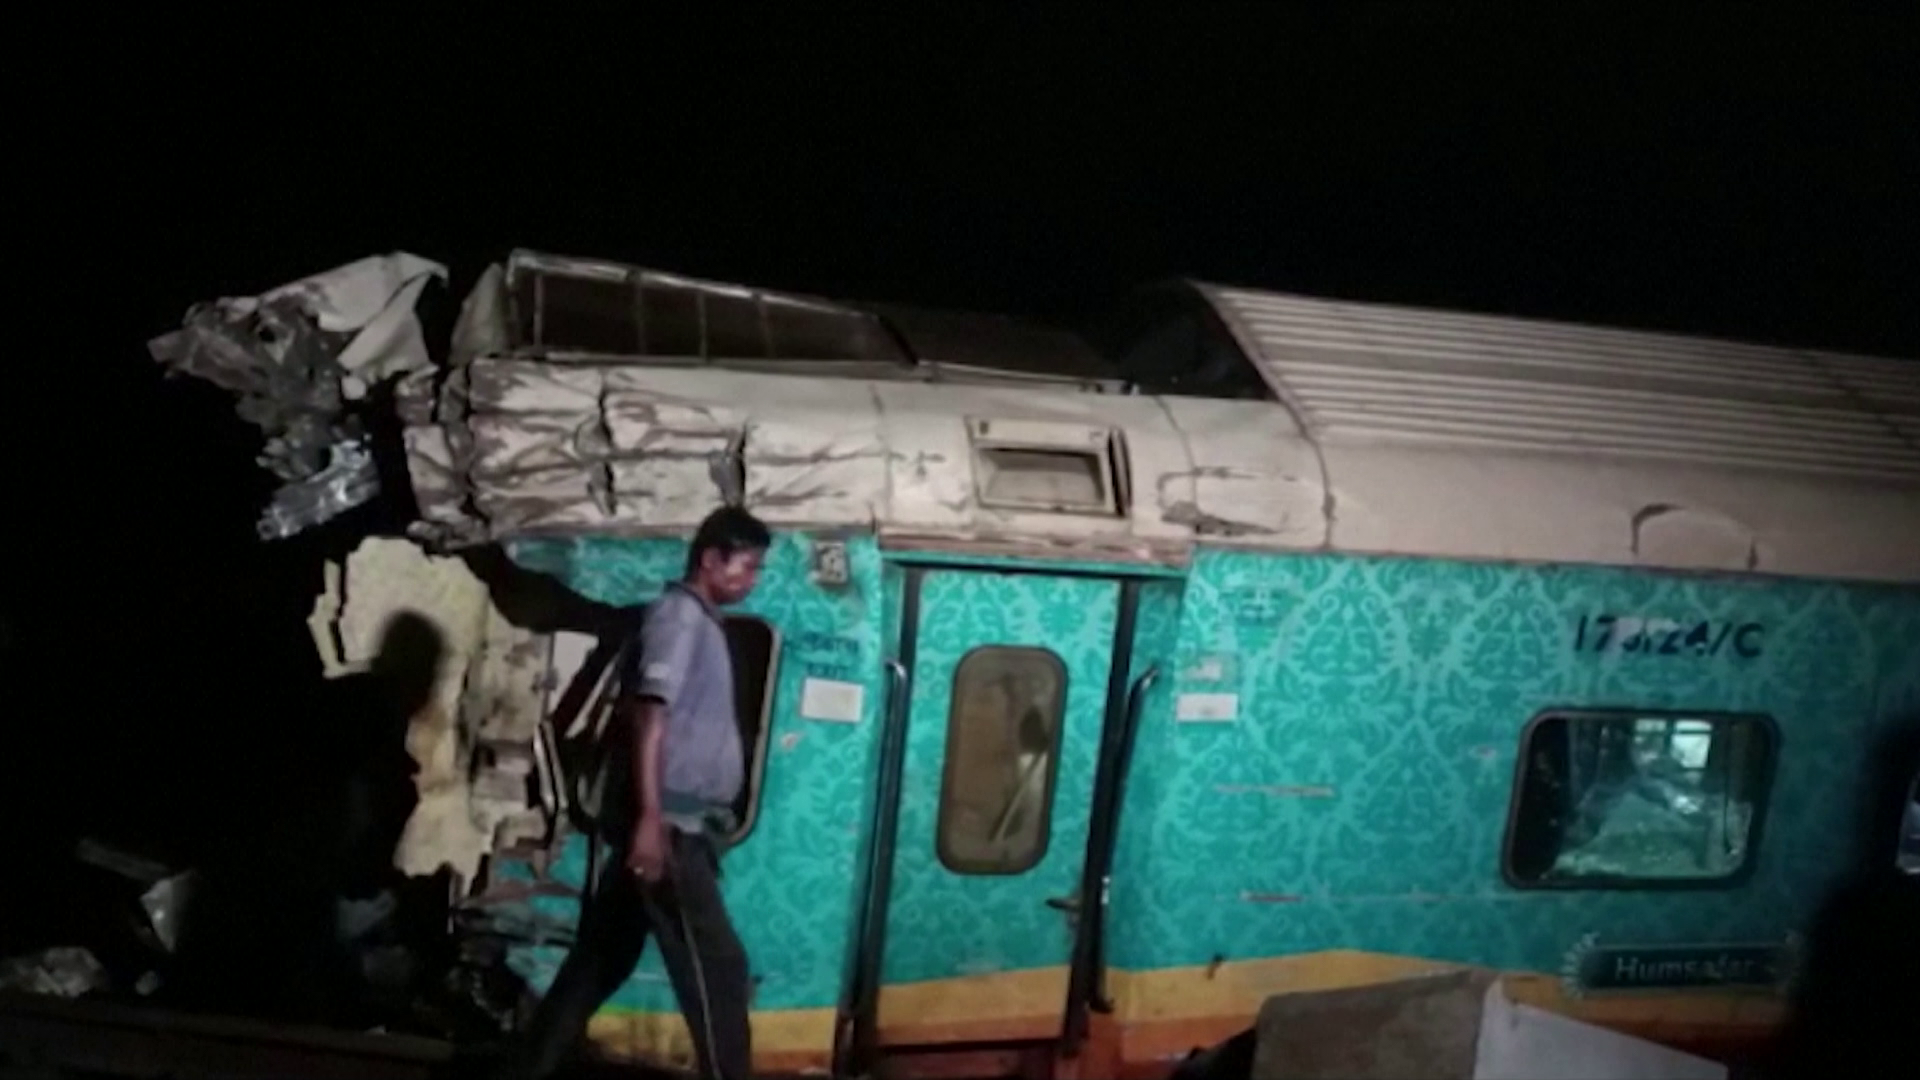 Sokan meghaltak egy súlyos vonatbalesetben Indiában